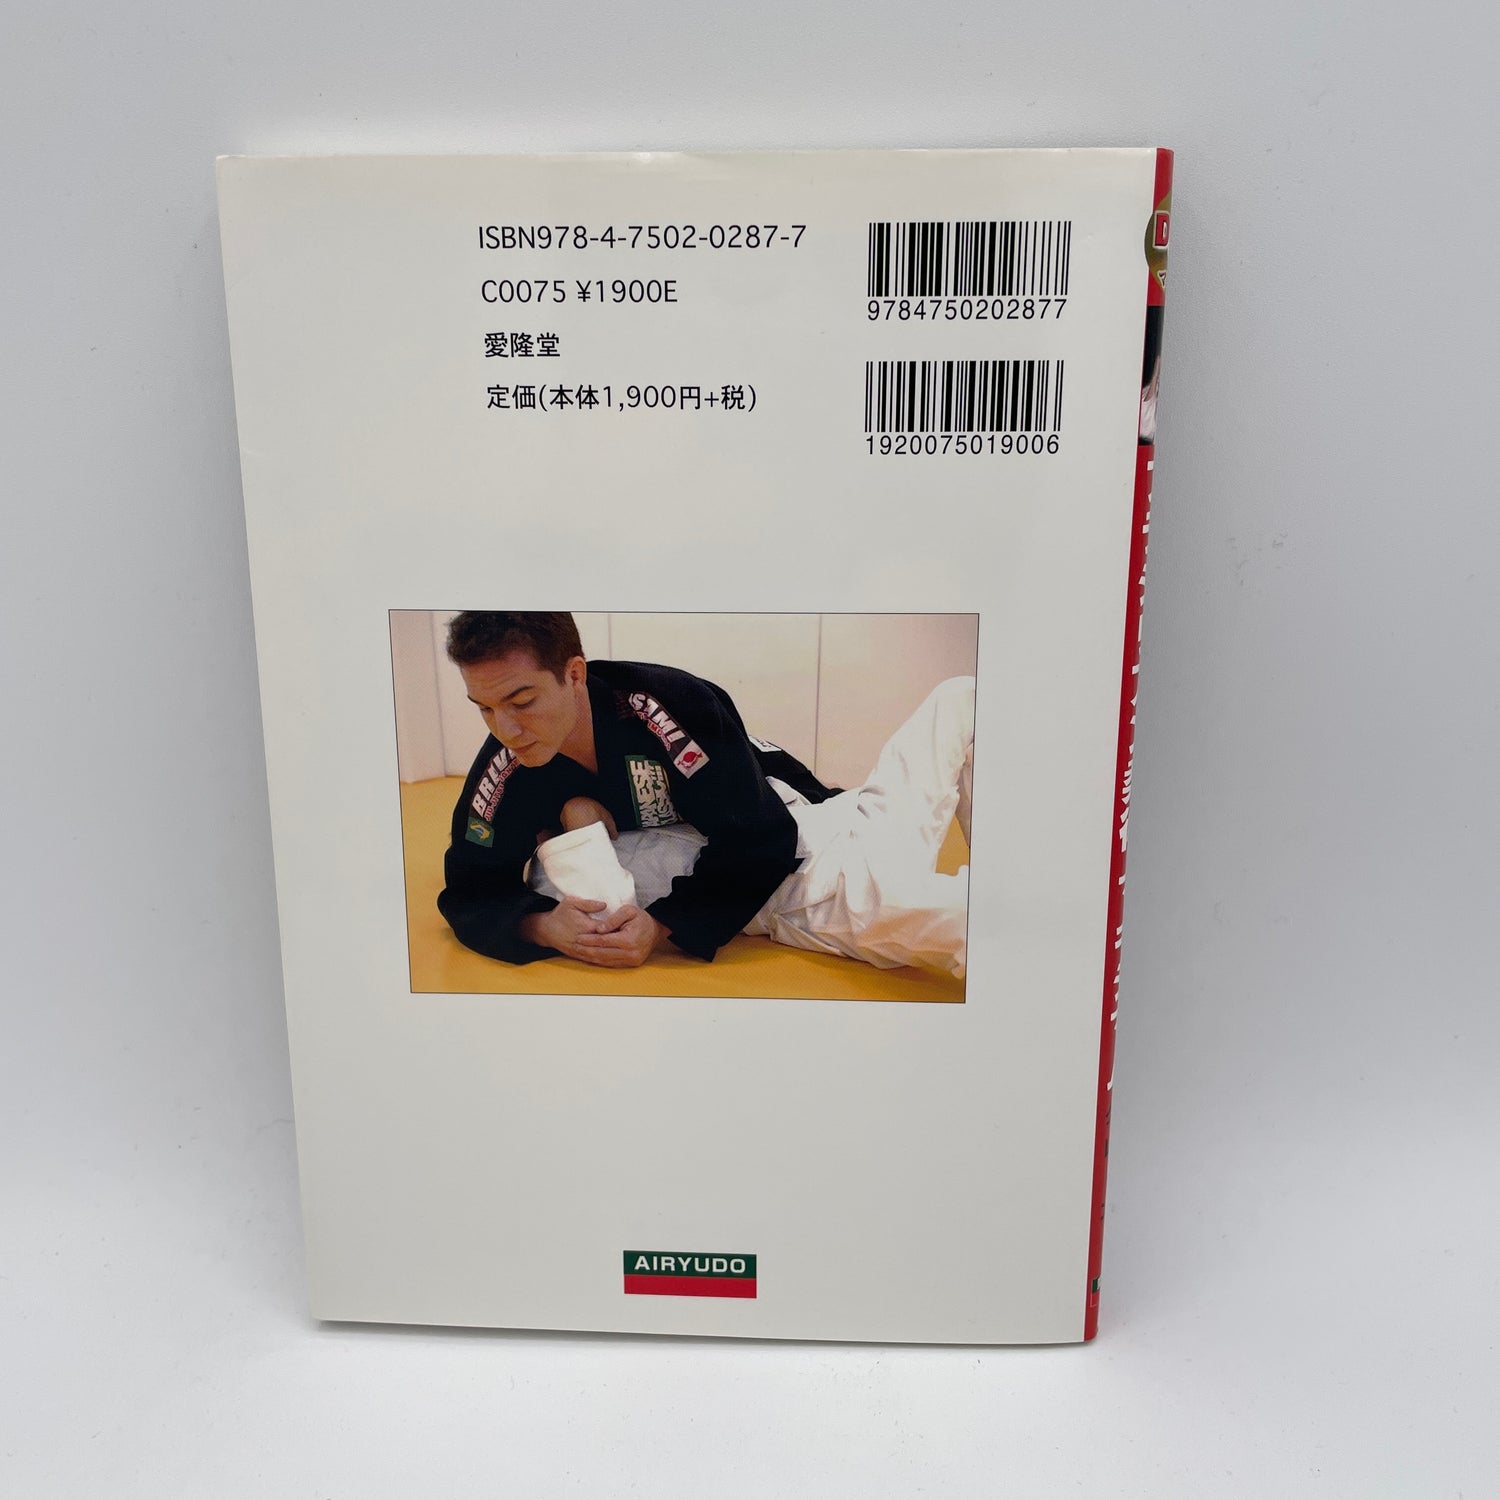 Libro y DVD Maximum BJJ de Alberto Crane (usado)